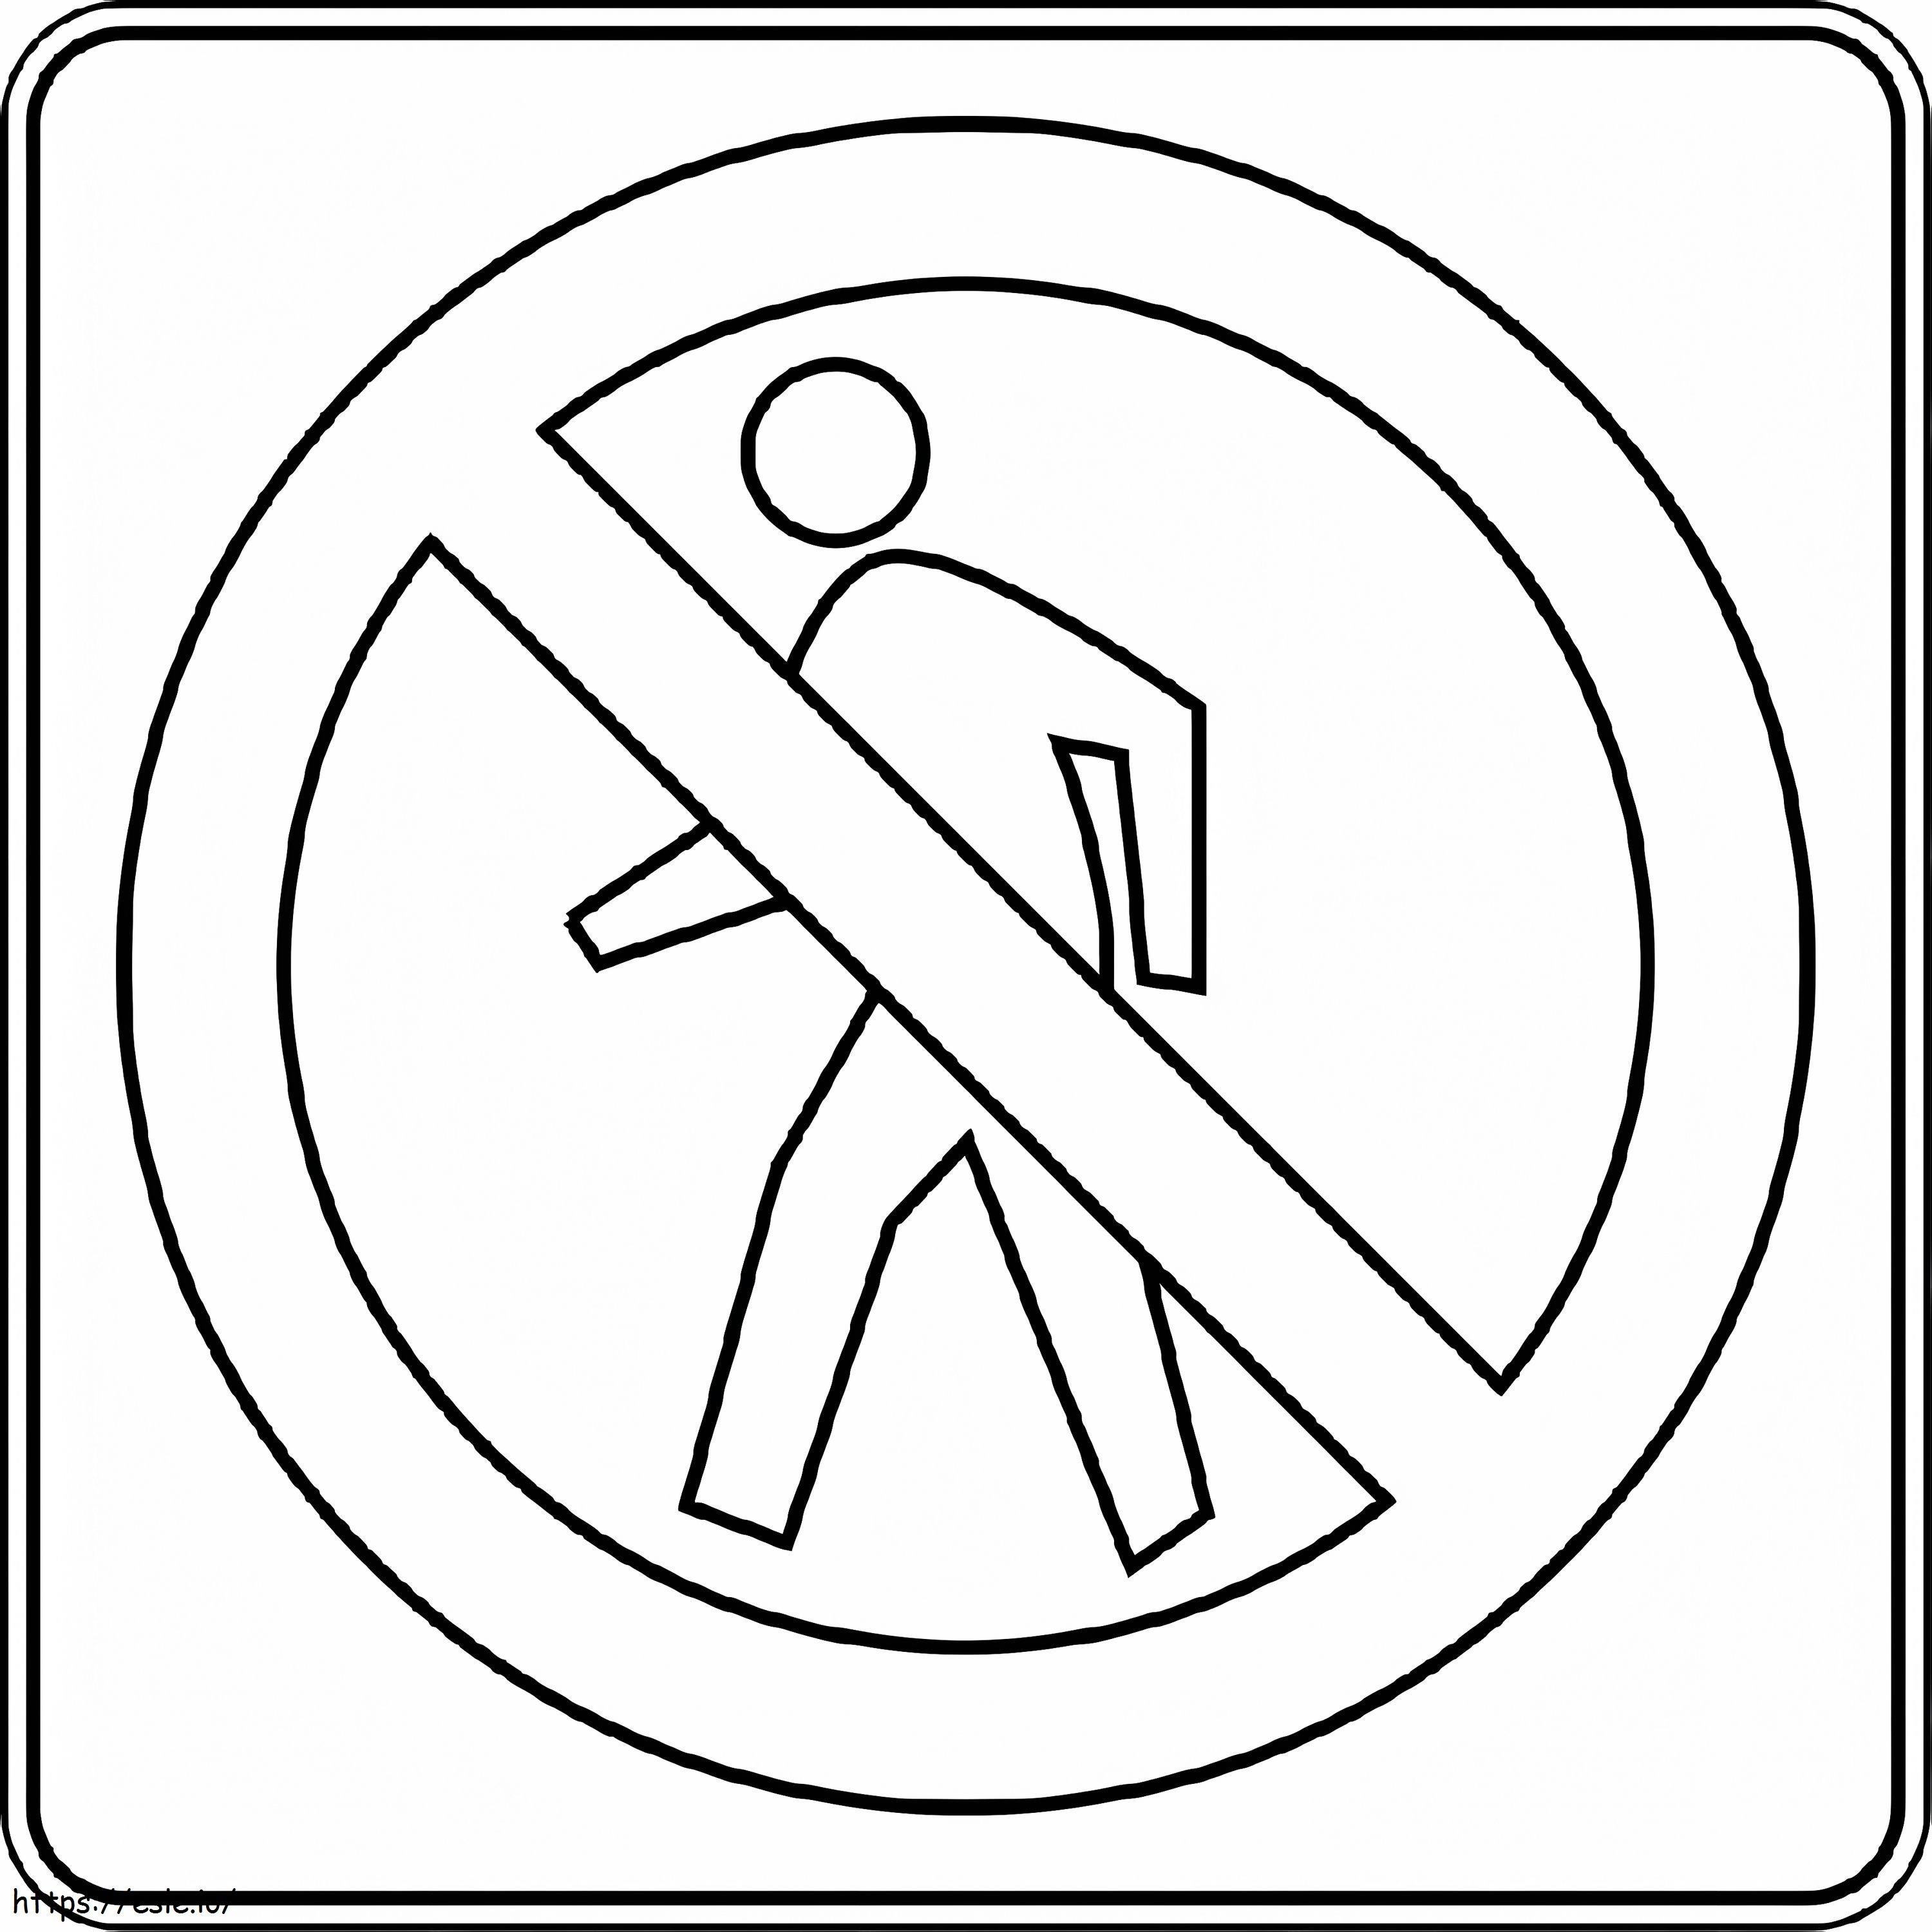 No Pedestrians Crossing coloring page